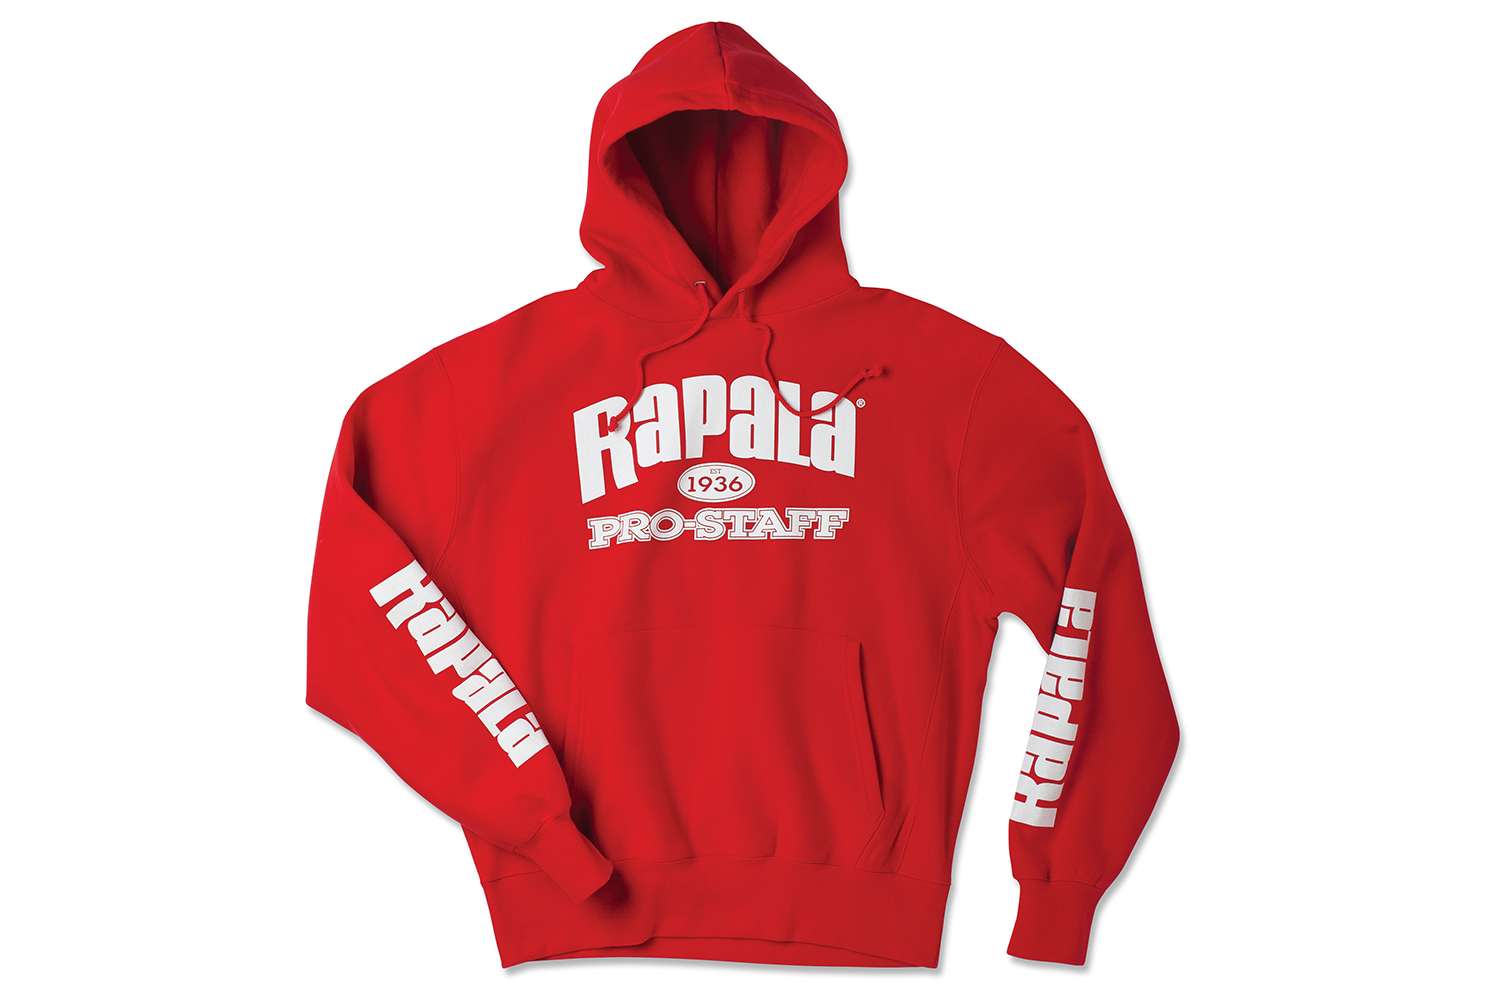 Rapala Pro Staff Sweatshirt,
$44.99